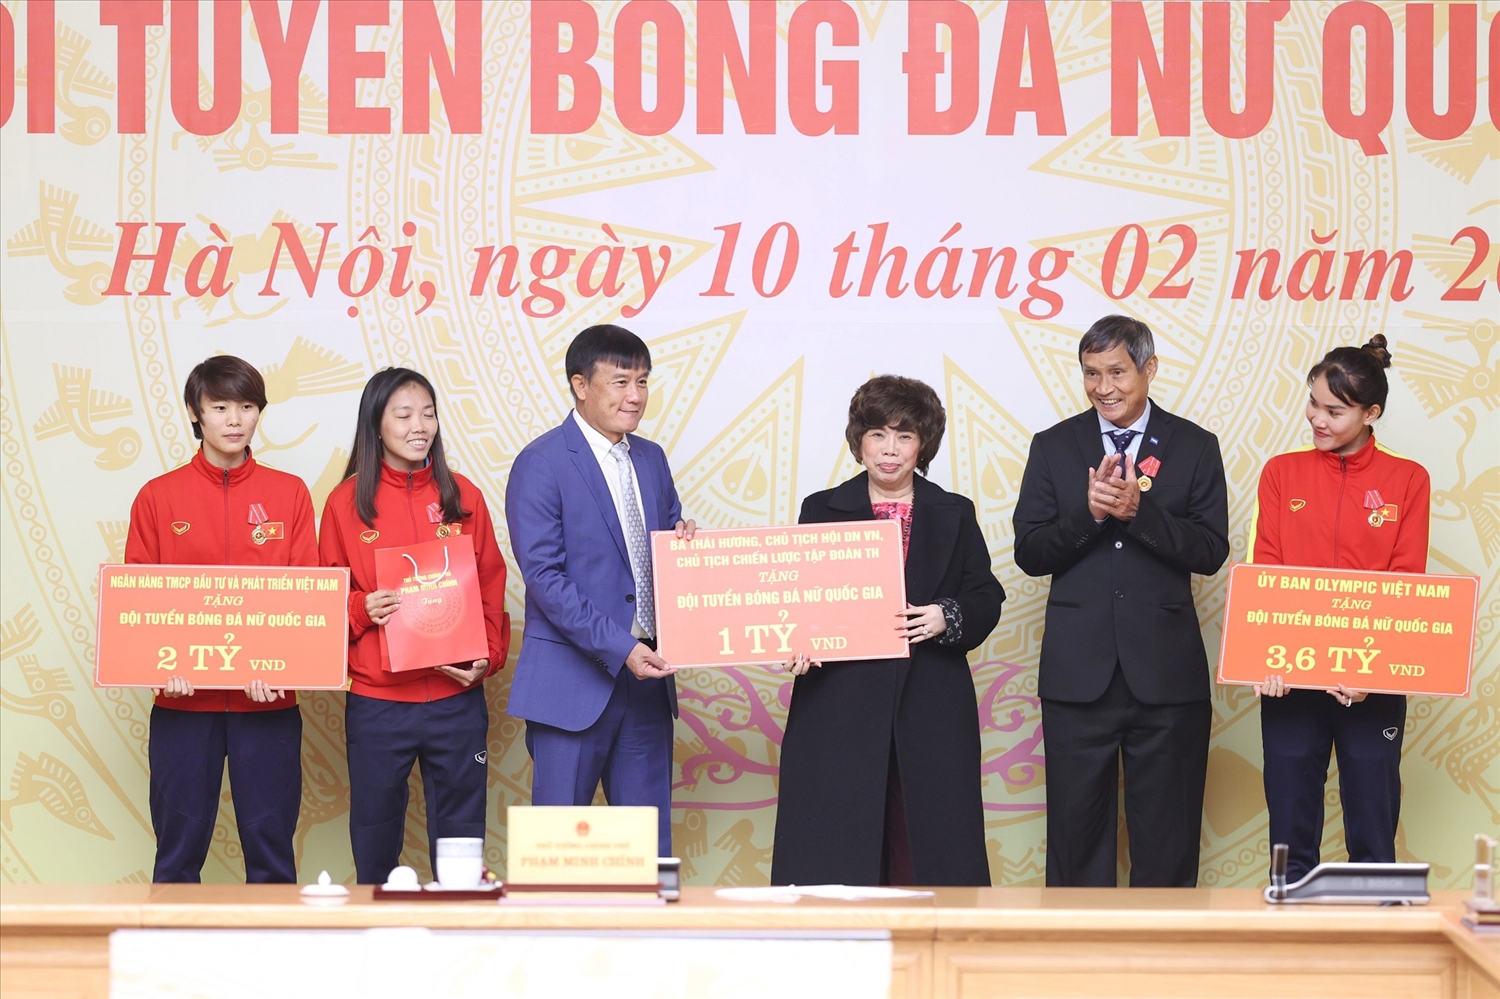 Bà Thái Hương trao tặng Đội tuyển bóng đá nữ quốc gia Việt Nam 1 tỷ đồng tiền mặt, 500 triệu đồng sản phẩm, 5 năm miễn phí sử dụng các sản phẩm tốt cho sức khỏe của TH